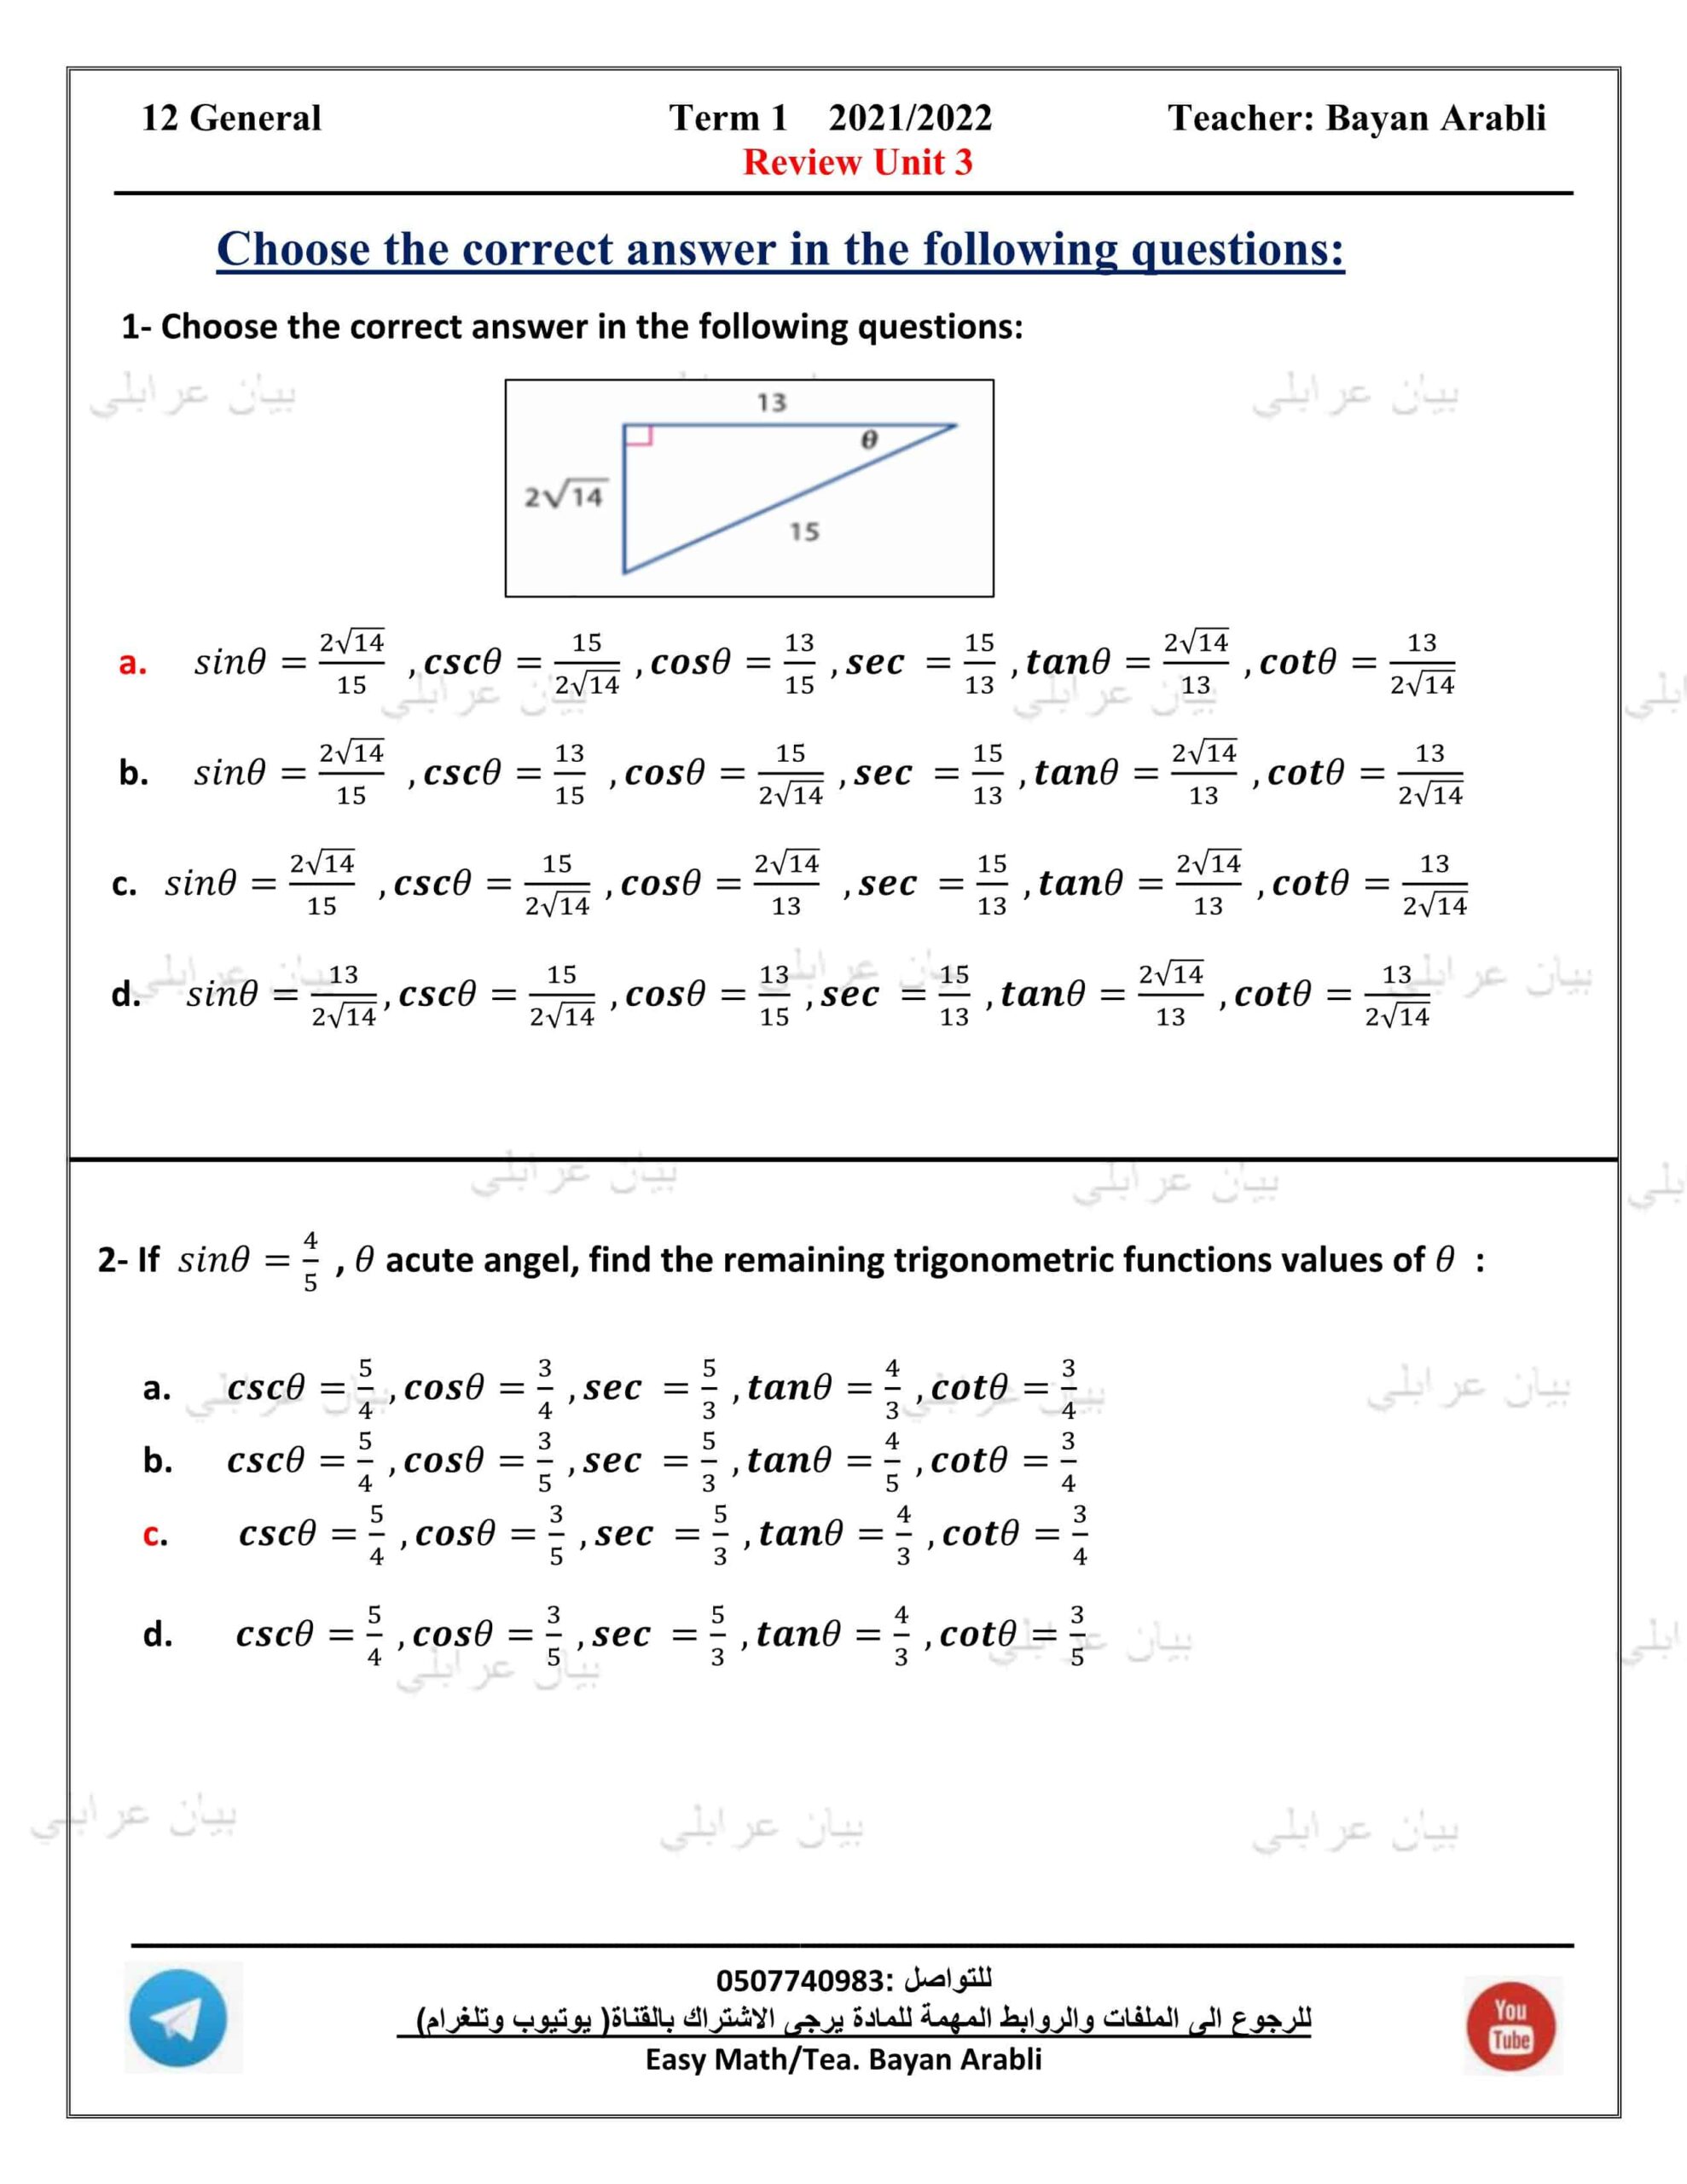 أوراق عمل Review Unit 3 الرياضيات المتكاملة الصف الثاني عشر عام 